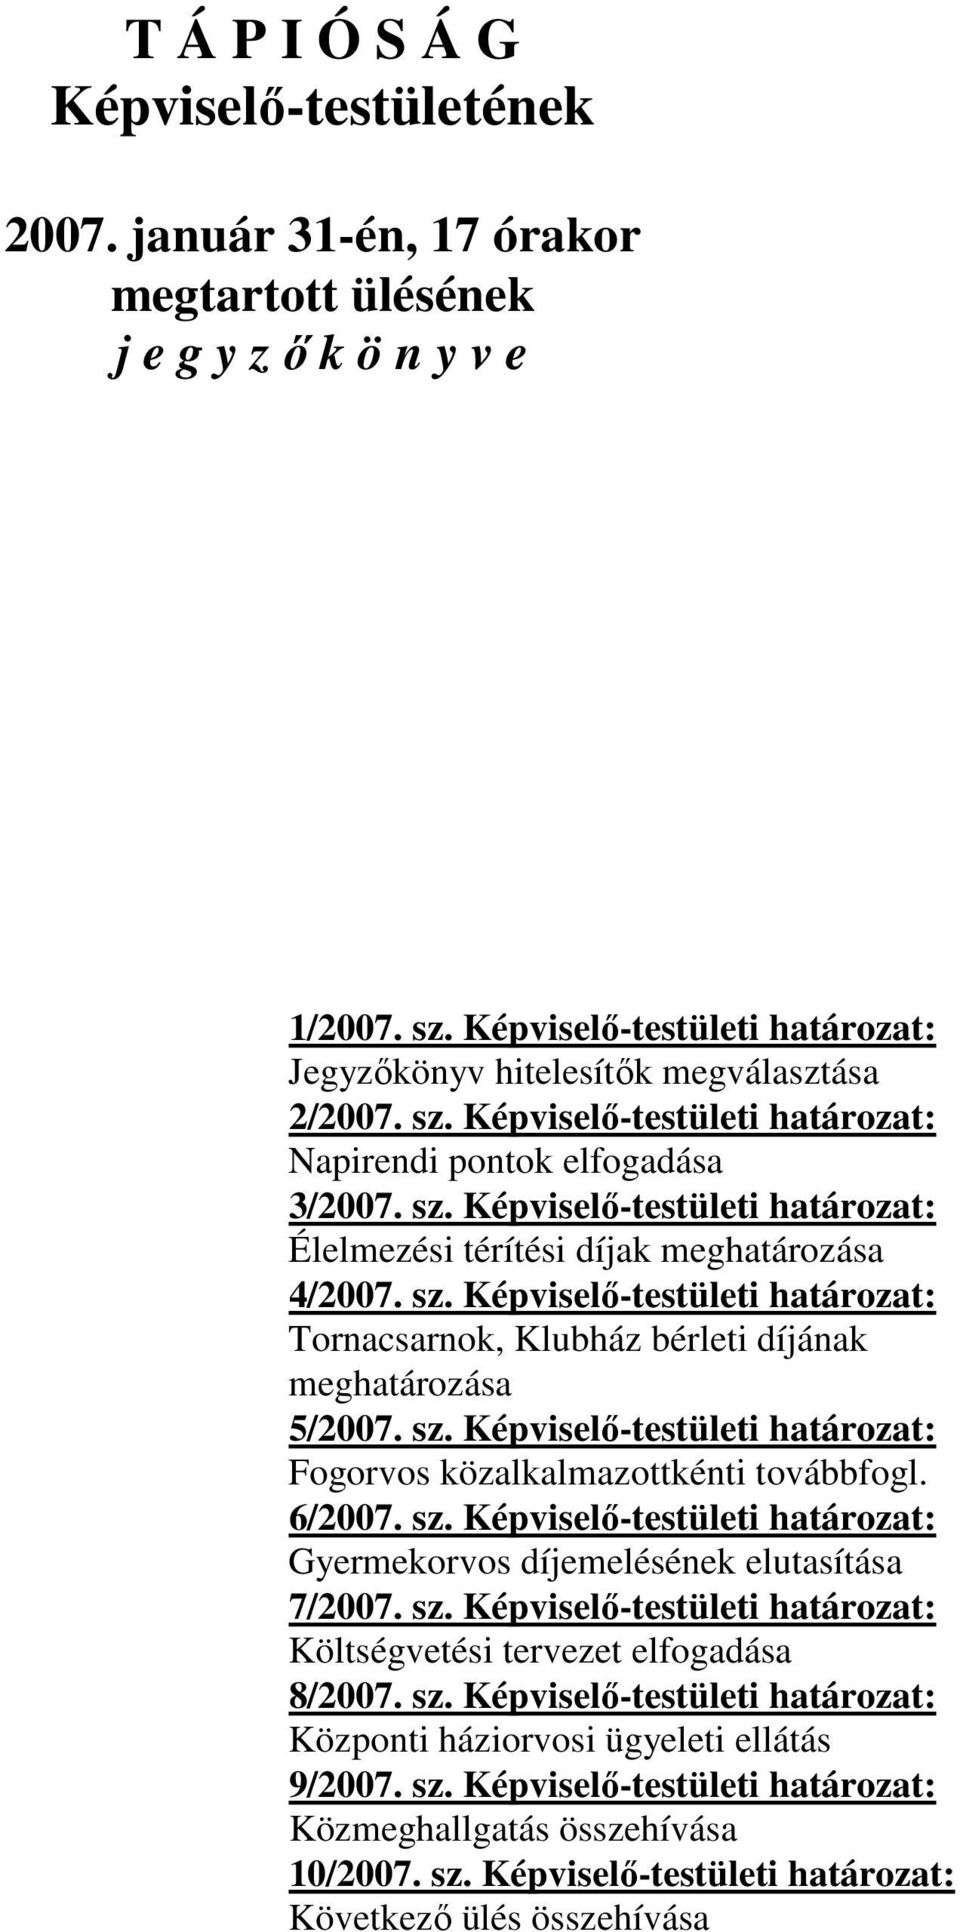 sz. Képviselő-testületi határozat: Tornacsarnok, Klubház bérleti díjának meghatározása 5/2007. sz. Képviselő-testületi határozat: Fogorvos közalkalmazottkénti továbbfogl. 6/2007. sz. Képviselő-testületi határozat: Gyermekorvos díjemelésének elutasítása 7/2007.